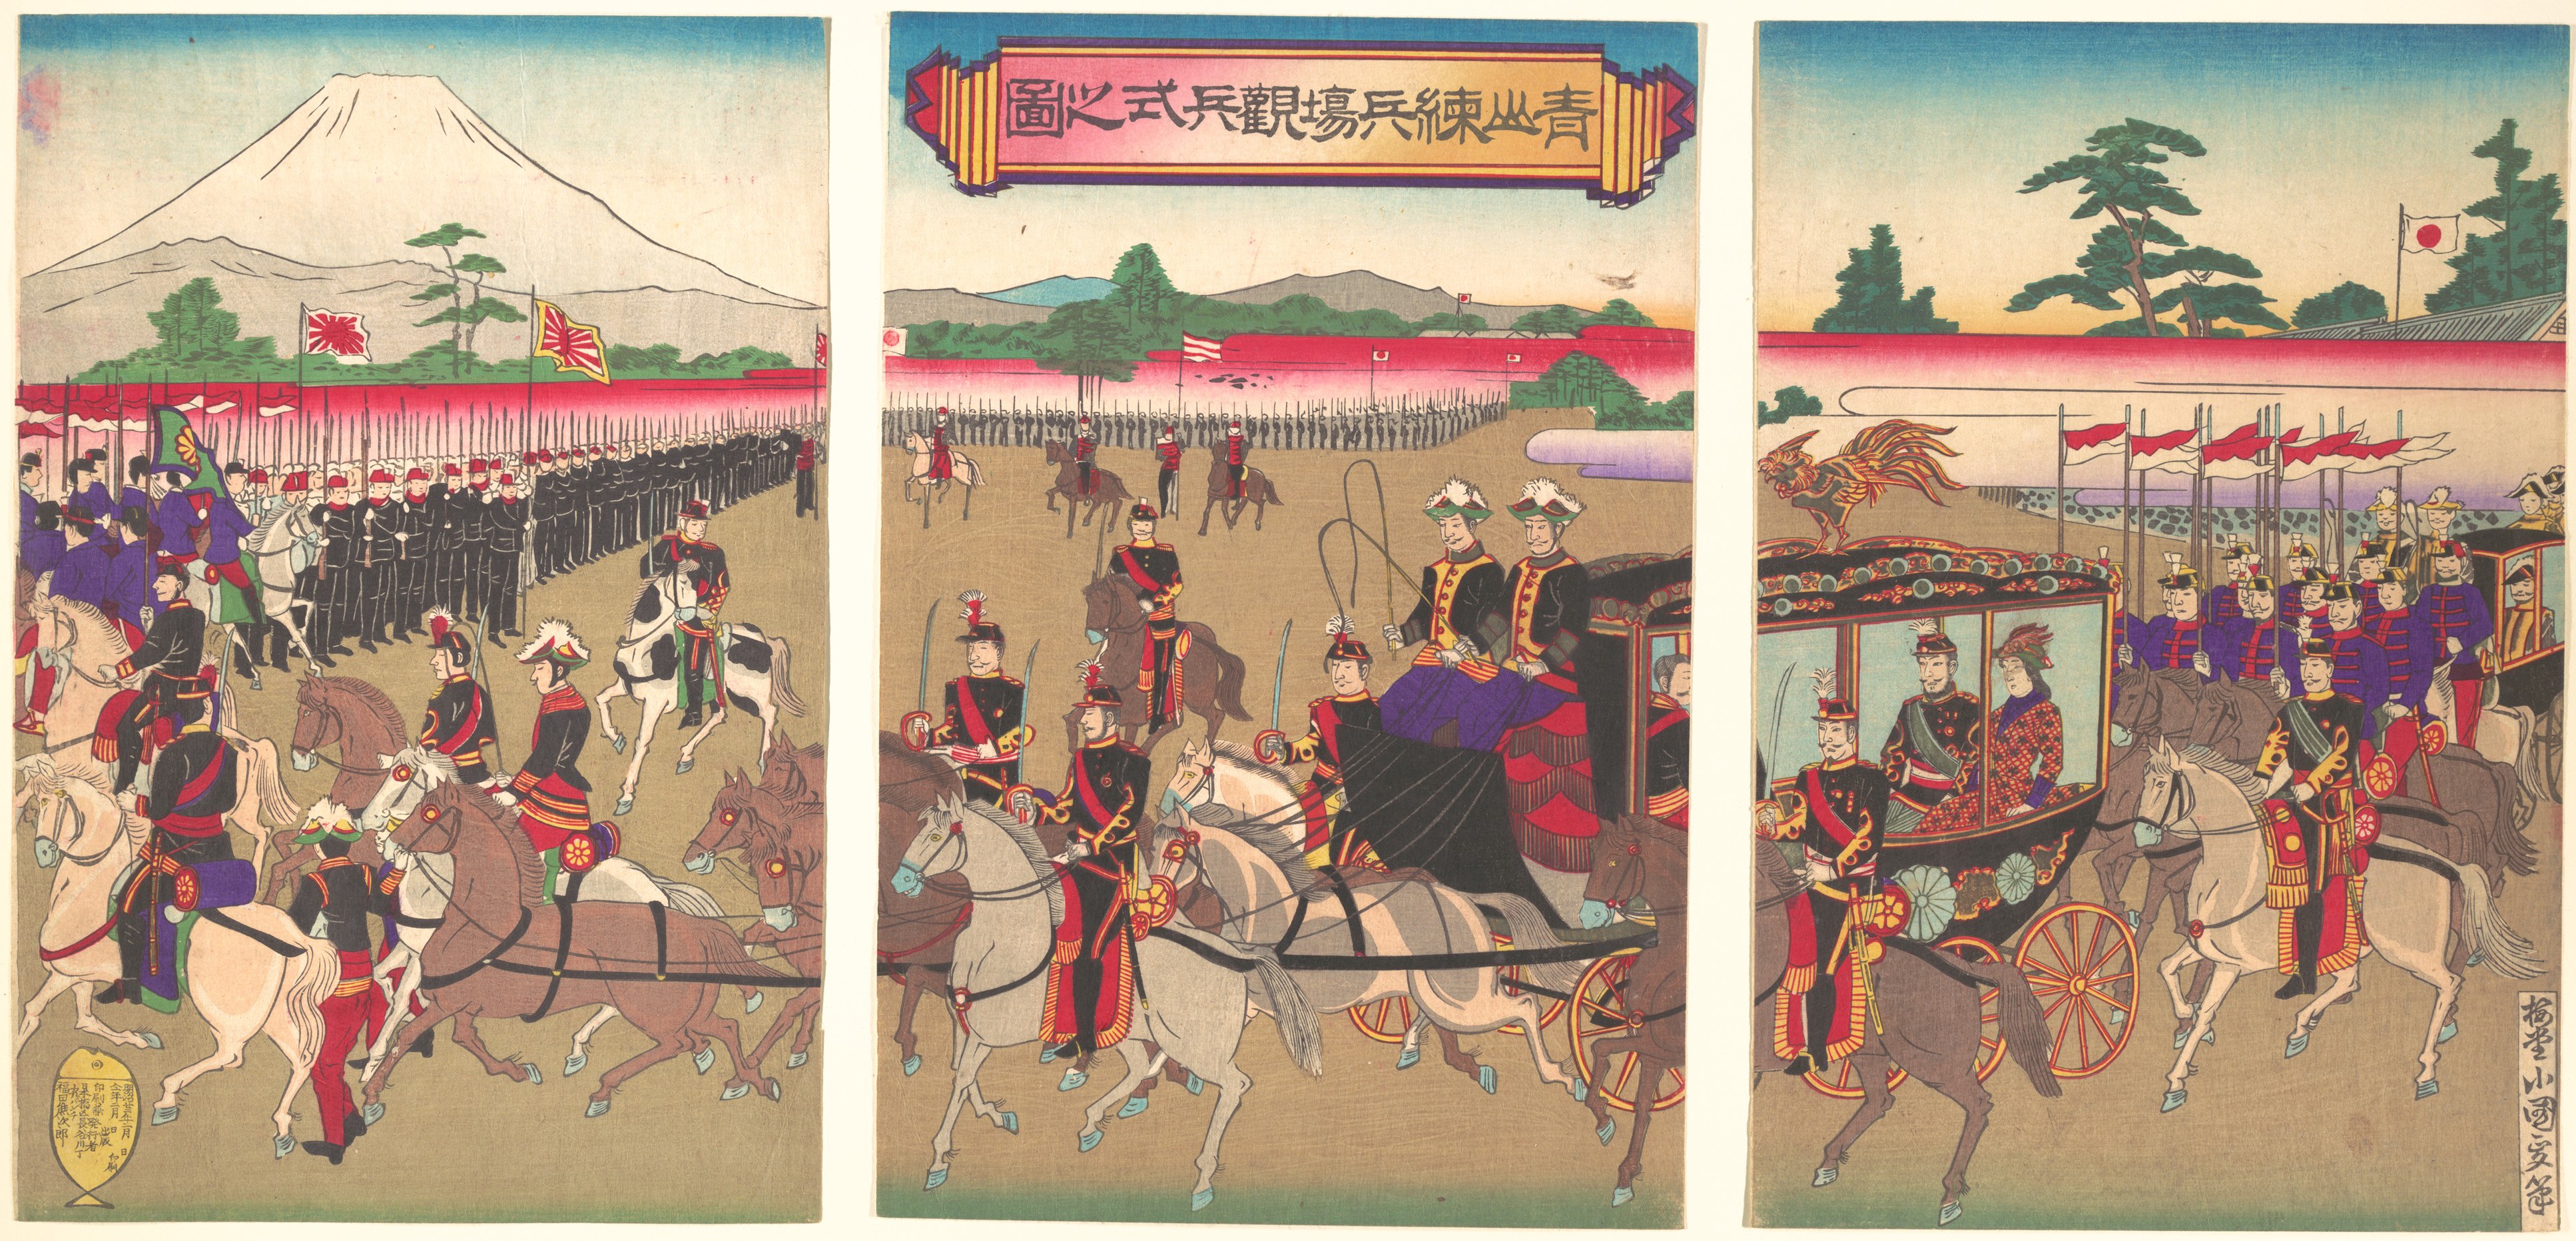 Японская конституция 1889. Япония 19 век Мэйдзи. Император Японии 1889. Армия эпохи Мэйдзи. Императорская армия Японии революция Мэйдзи.